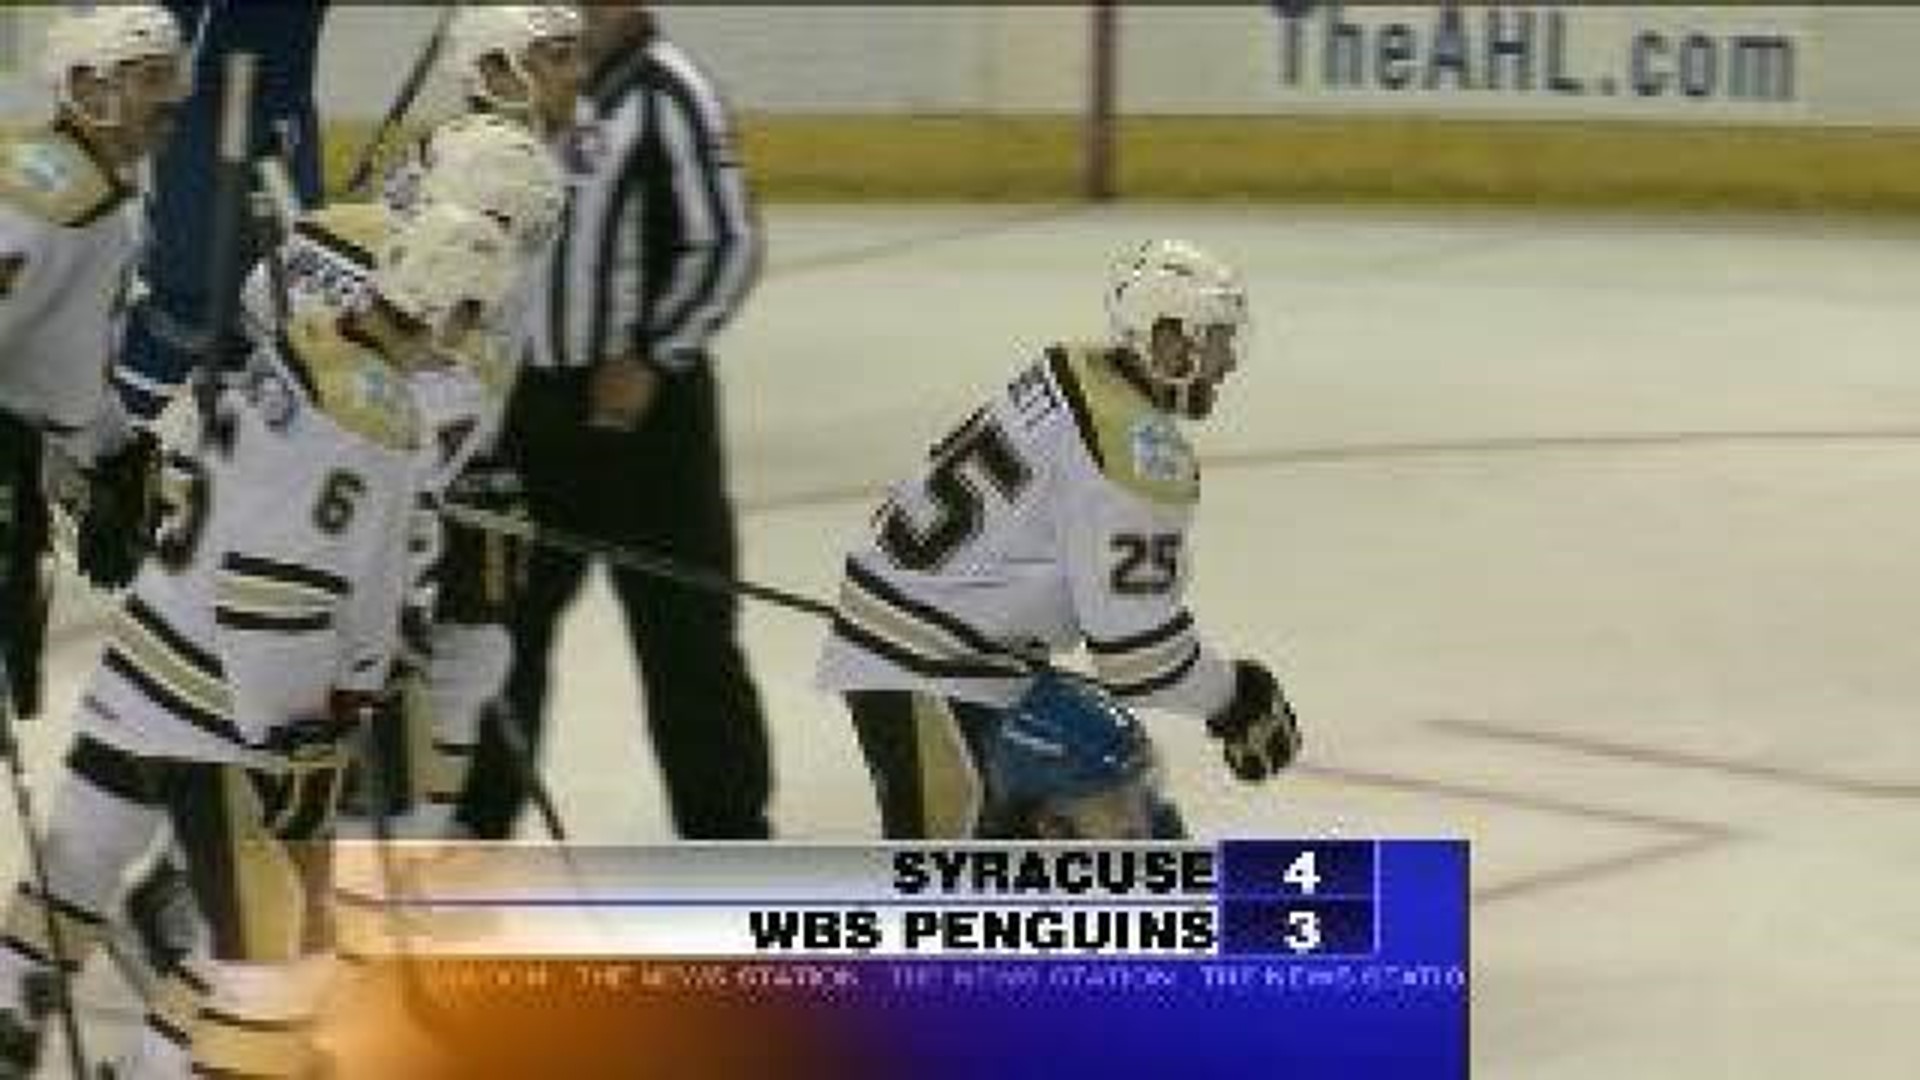 Syracuse 4 WBS Penguins 3 AHL Hockey Final